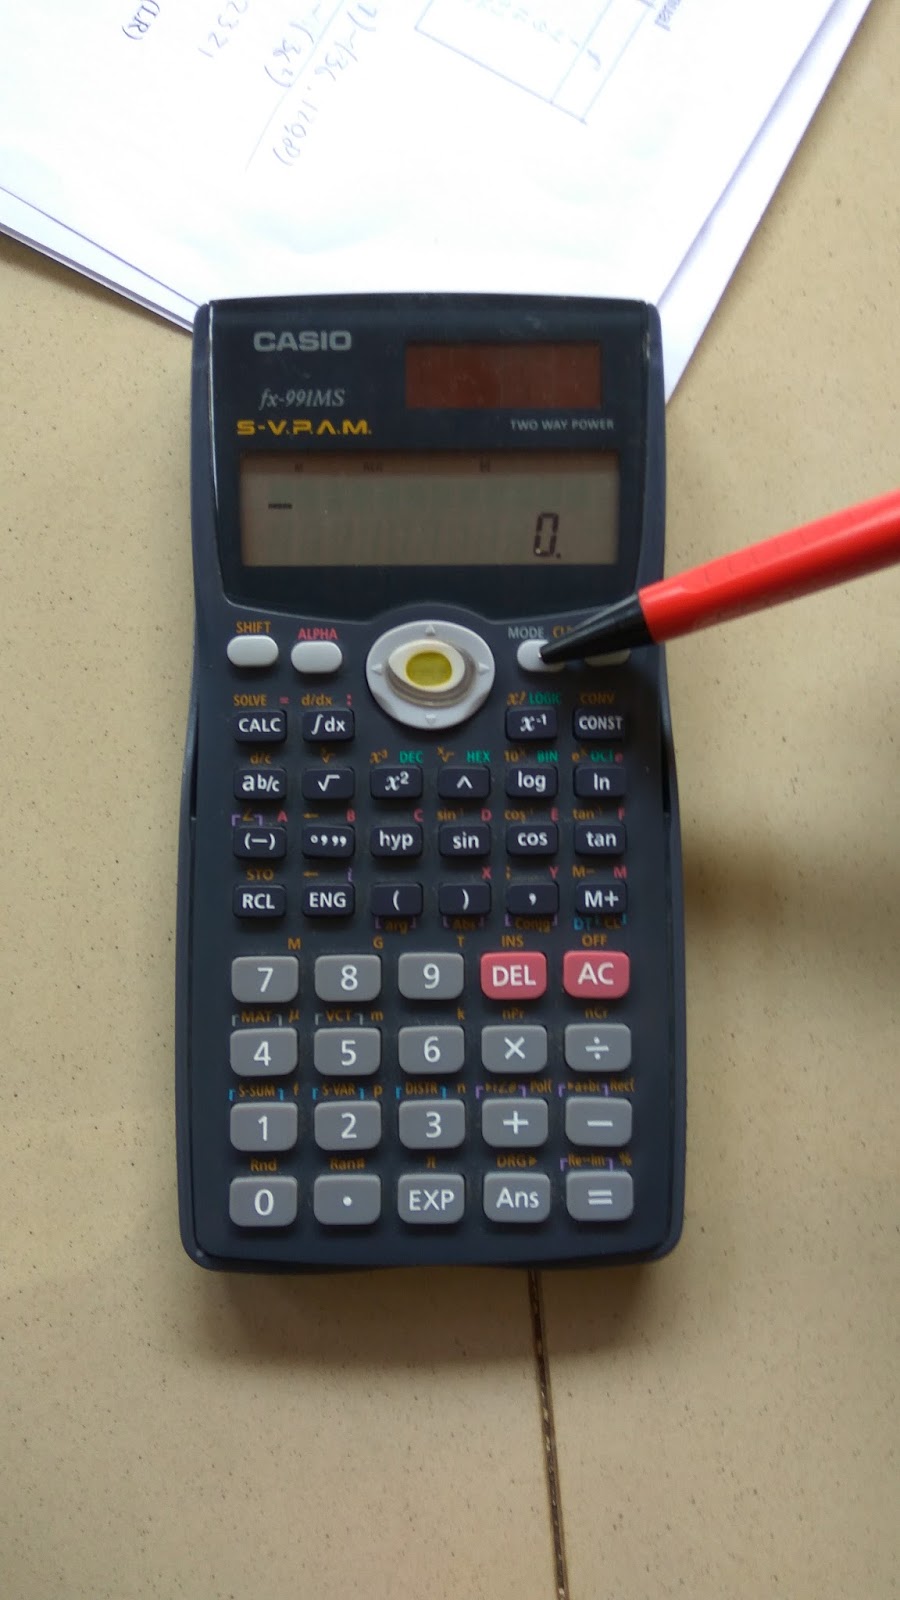 Cara Menggunakan Kalkulator Casio Fx 570ms